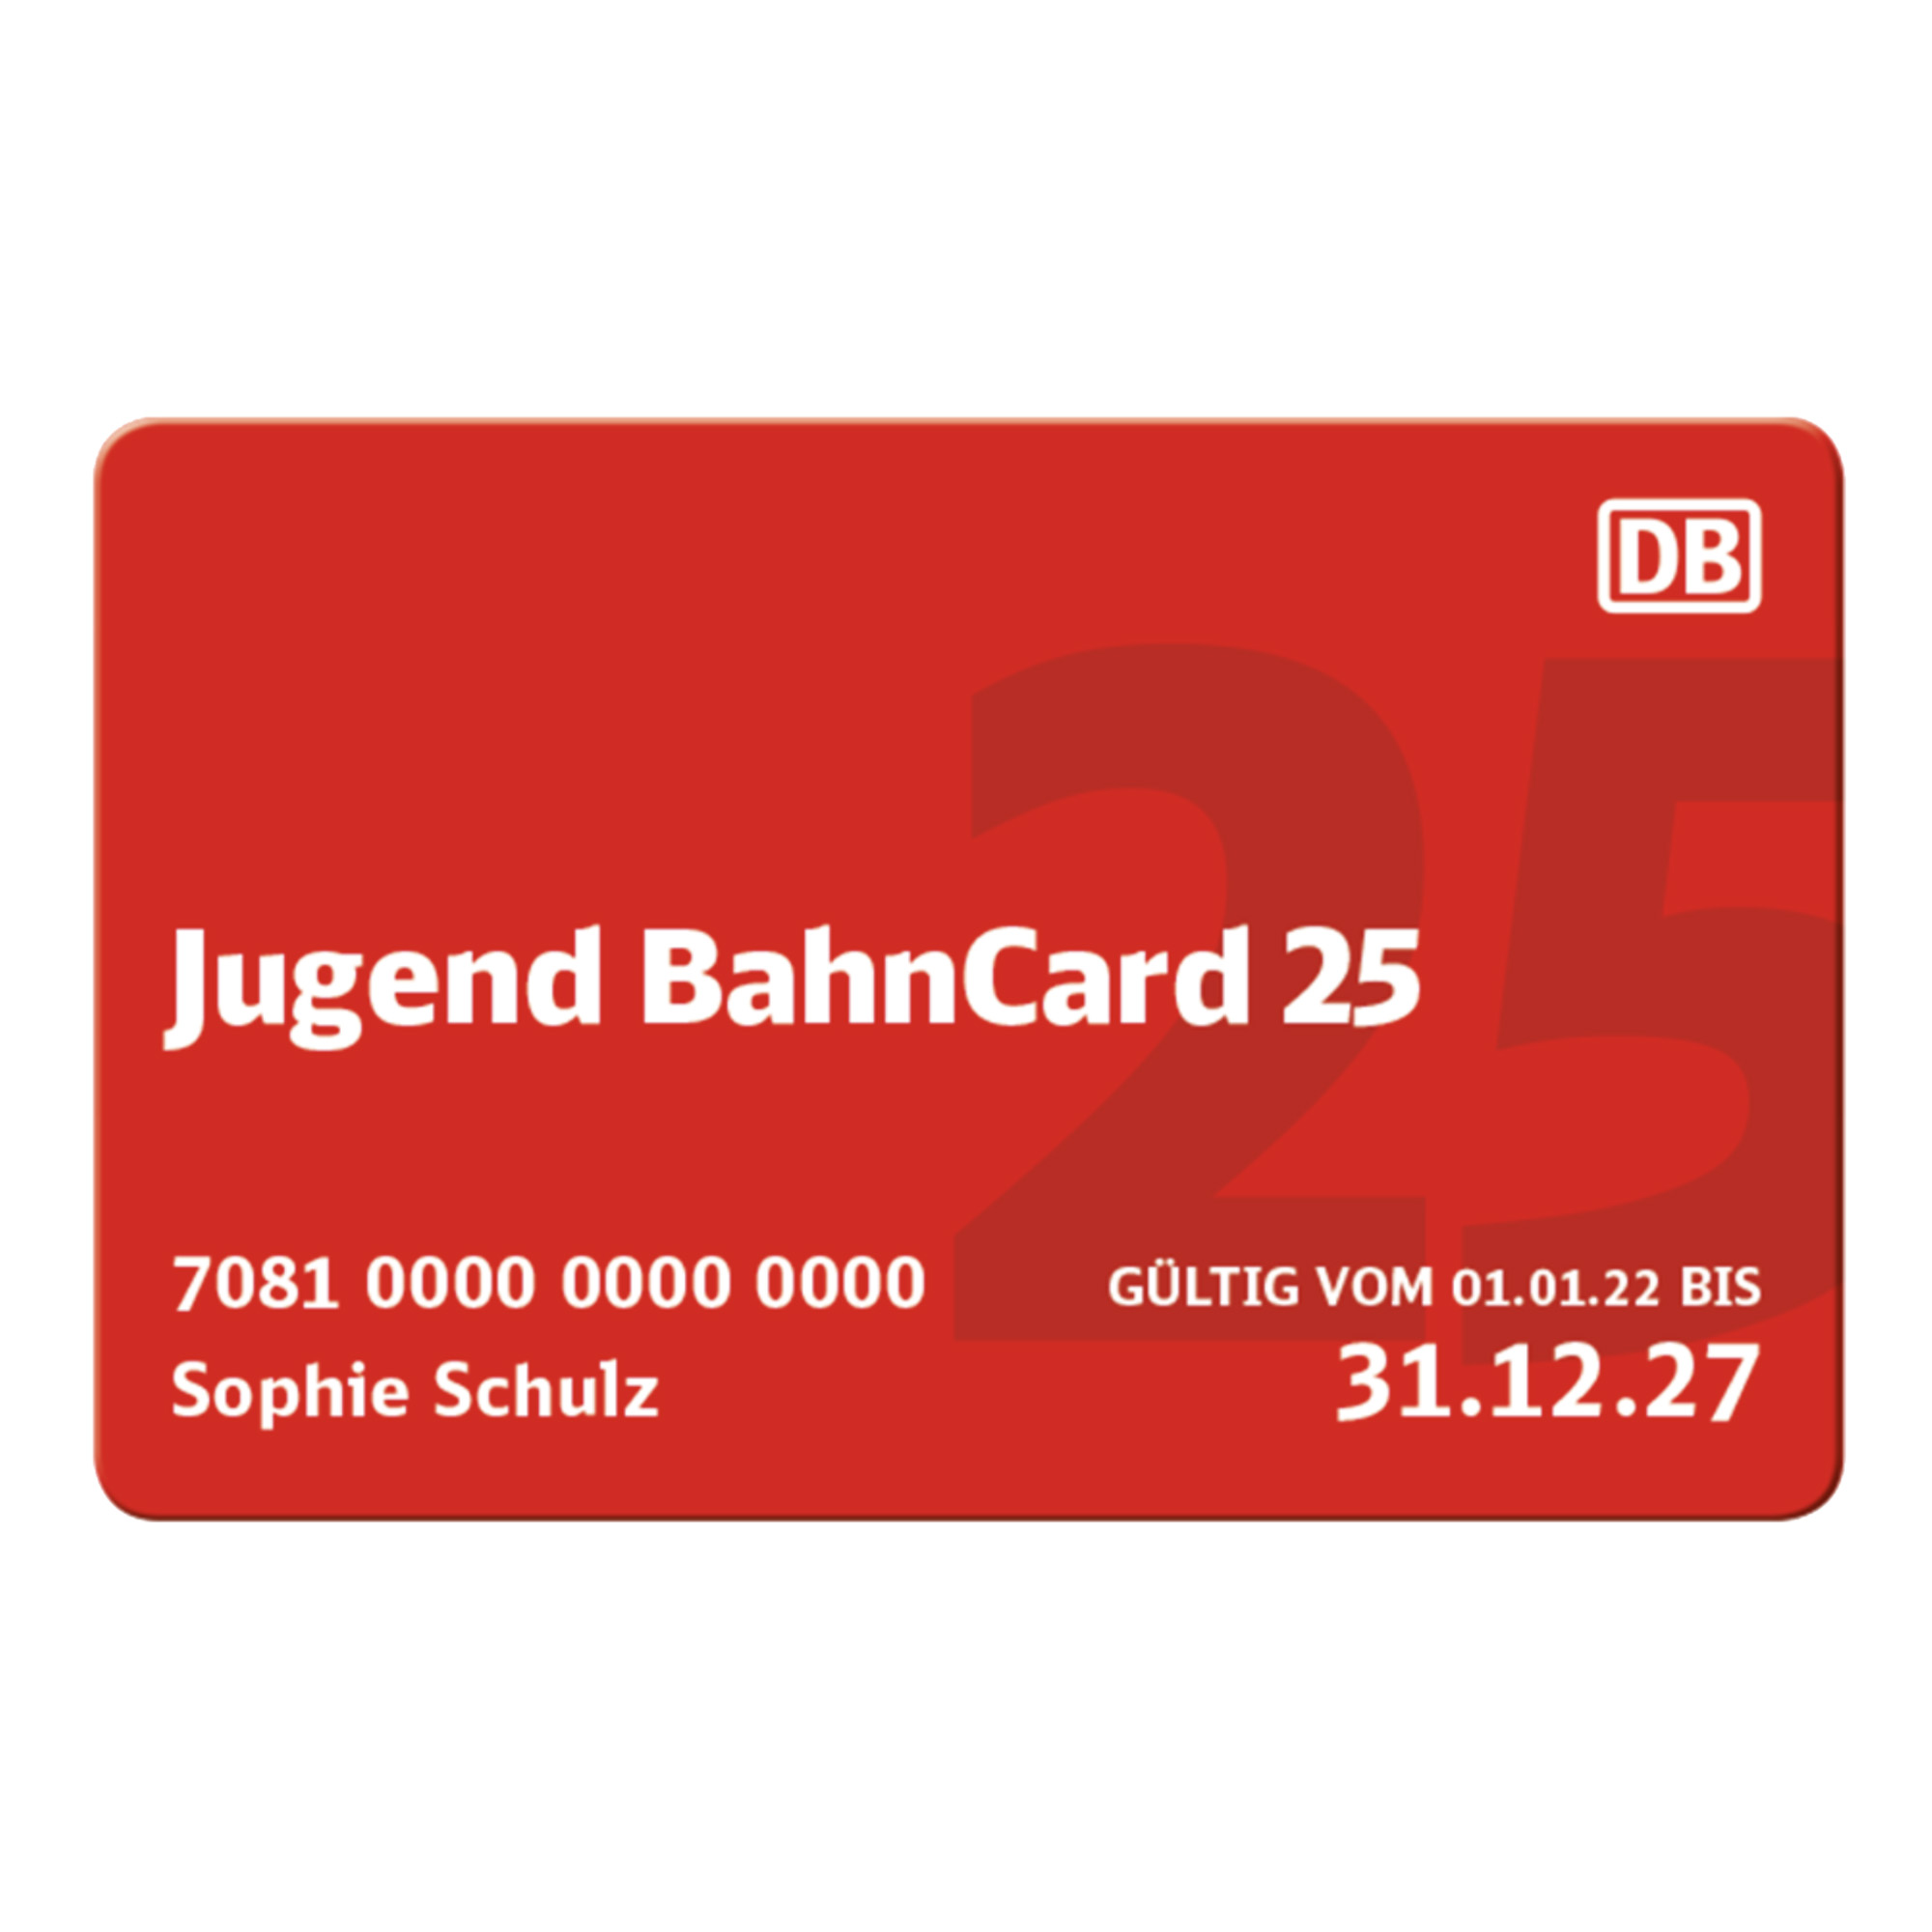 Jugend BahnCard 25